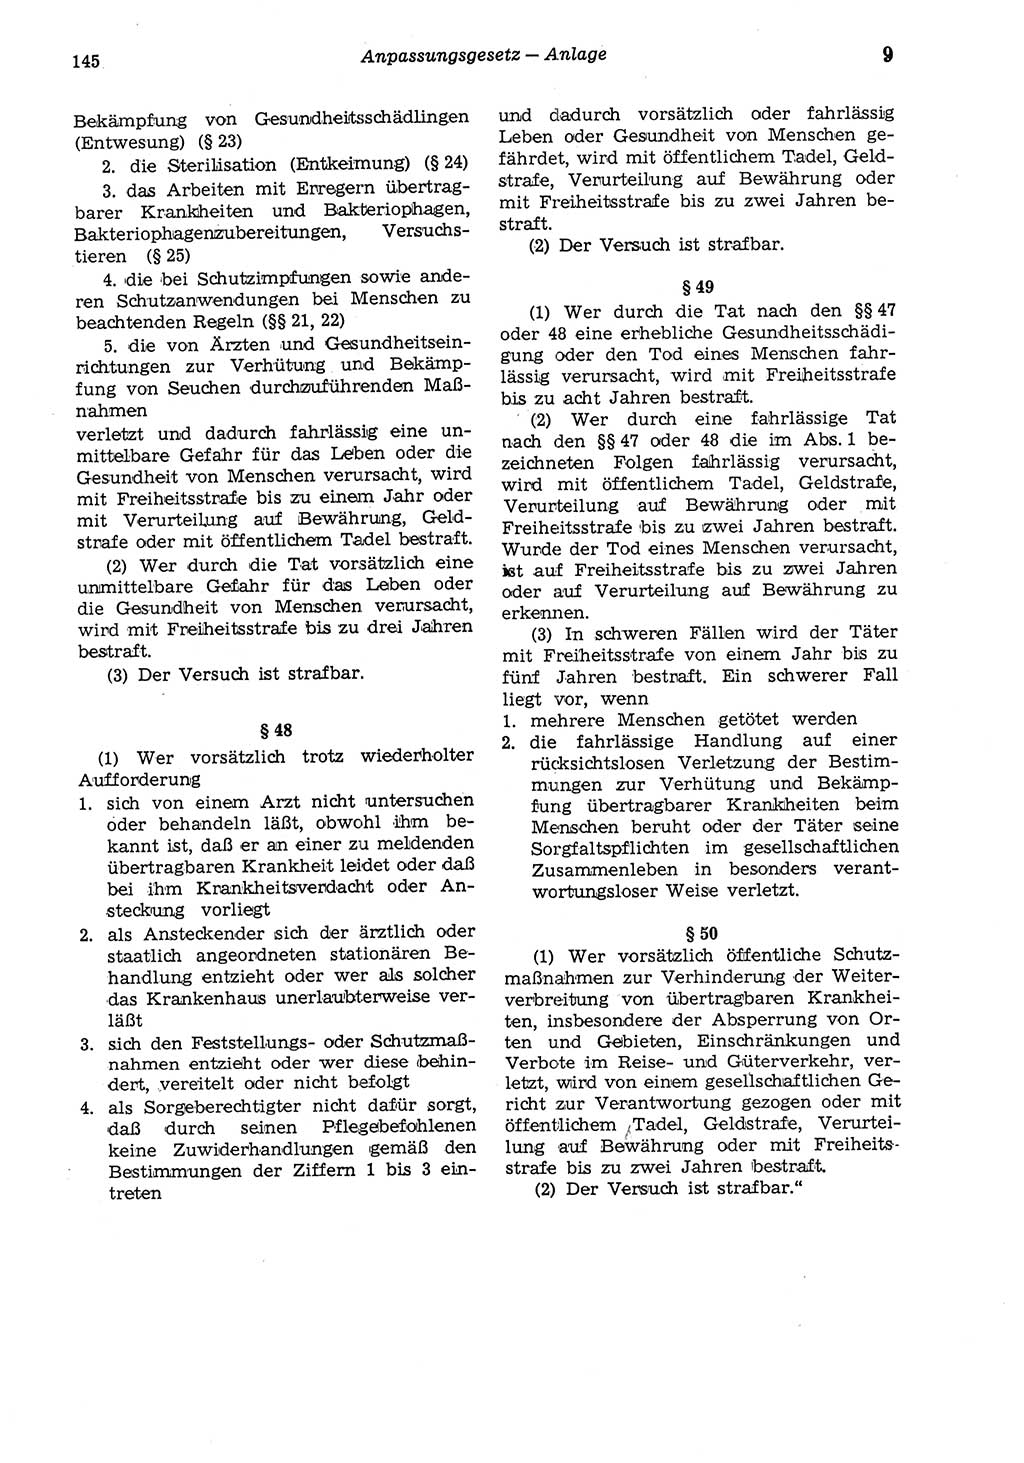 Strafgesetzbuch (StGB) der Deutschen Demokratischen Republik (DDR) und angrenzende Gesetze und Bestimmungen 1975, Seite 145 (StGB DDR Ges. Best. 1975, S. 145)